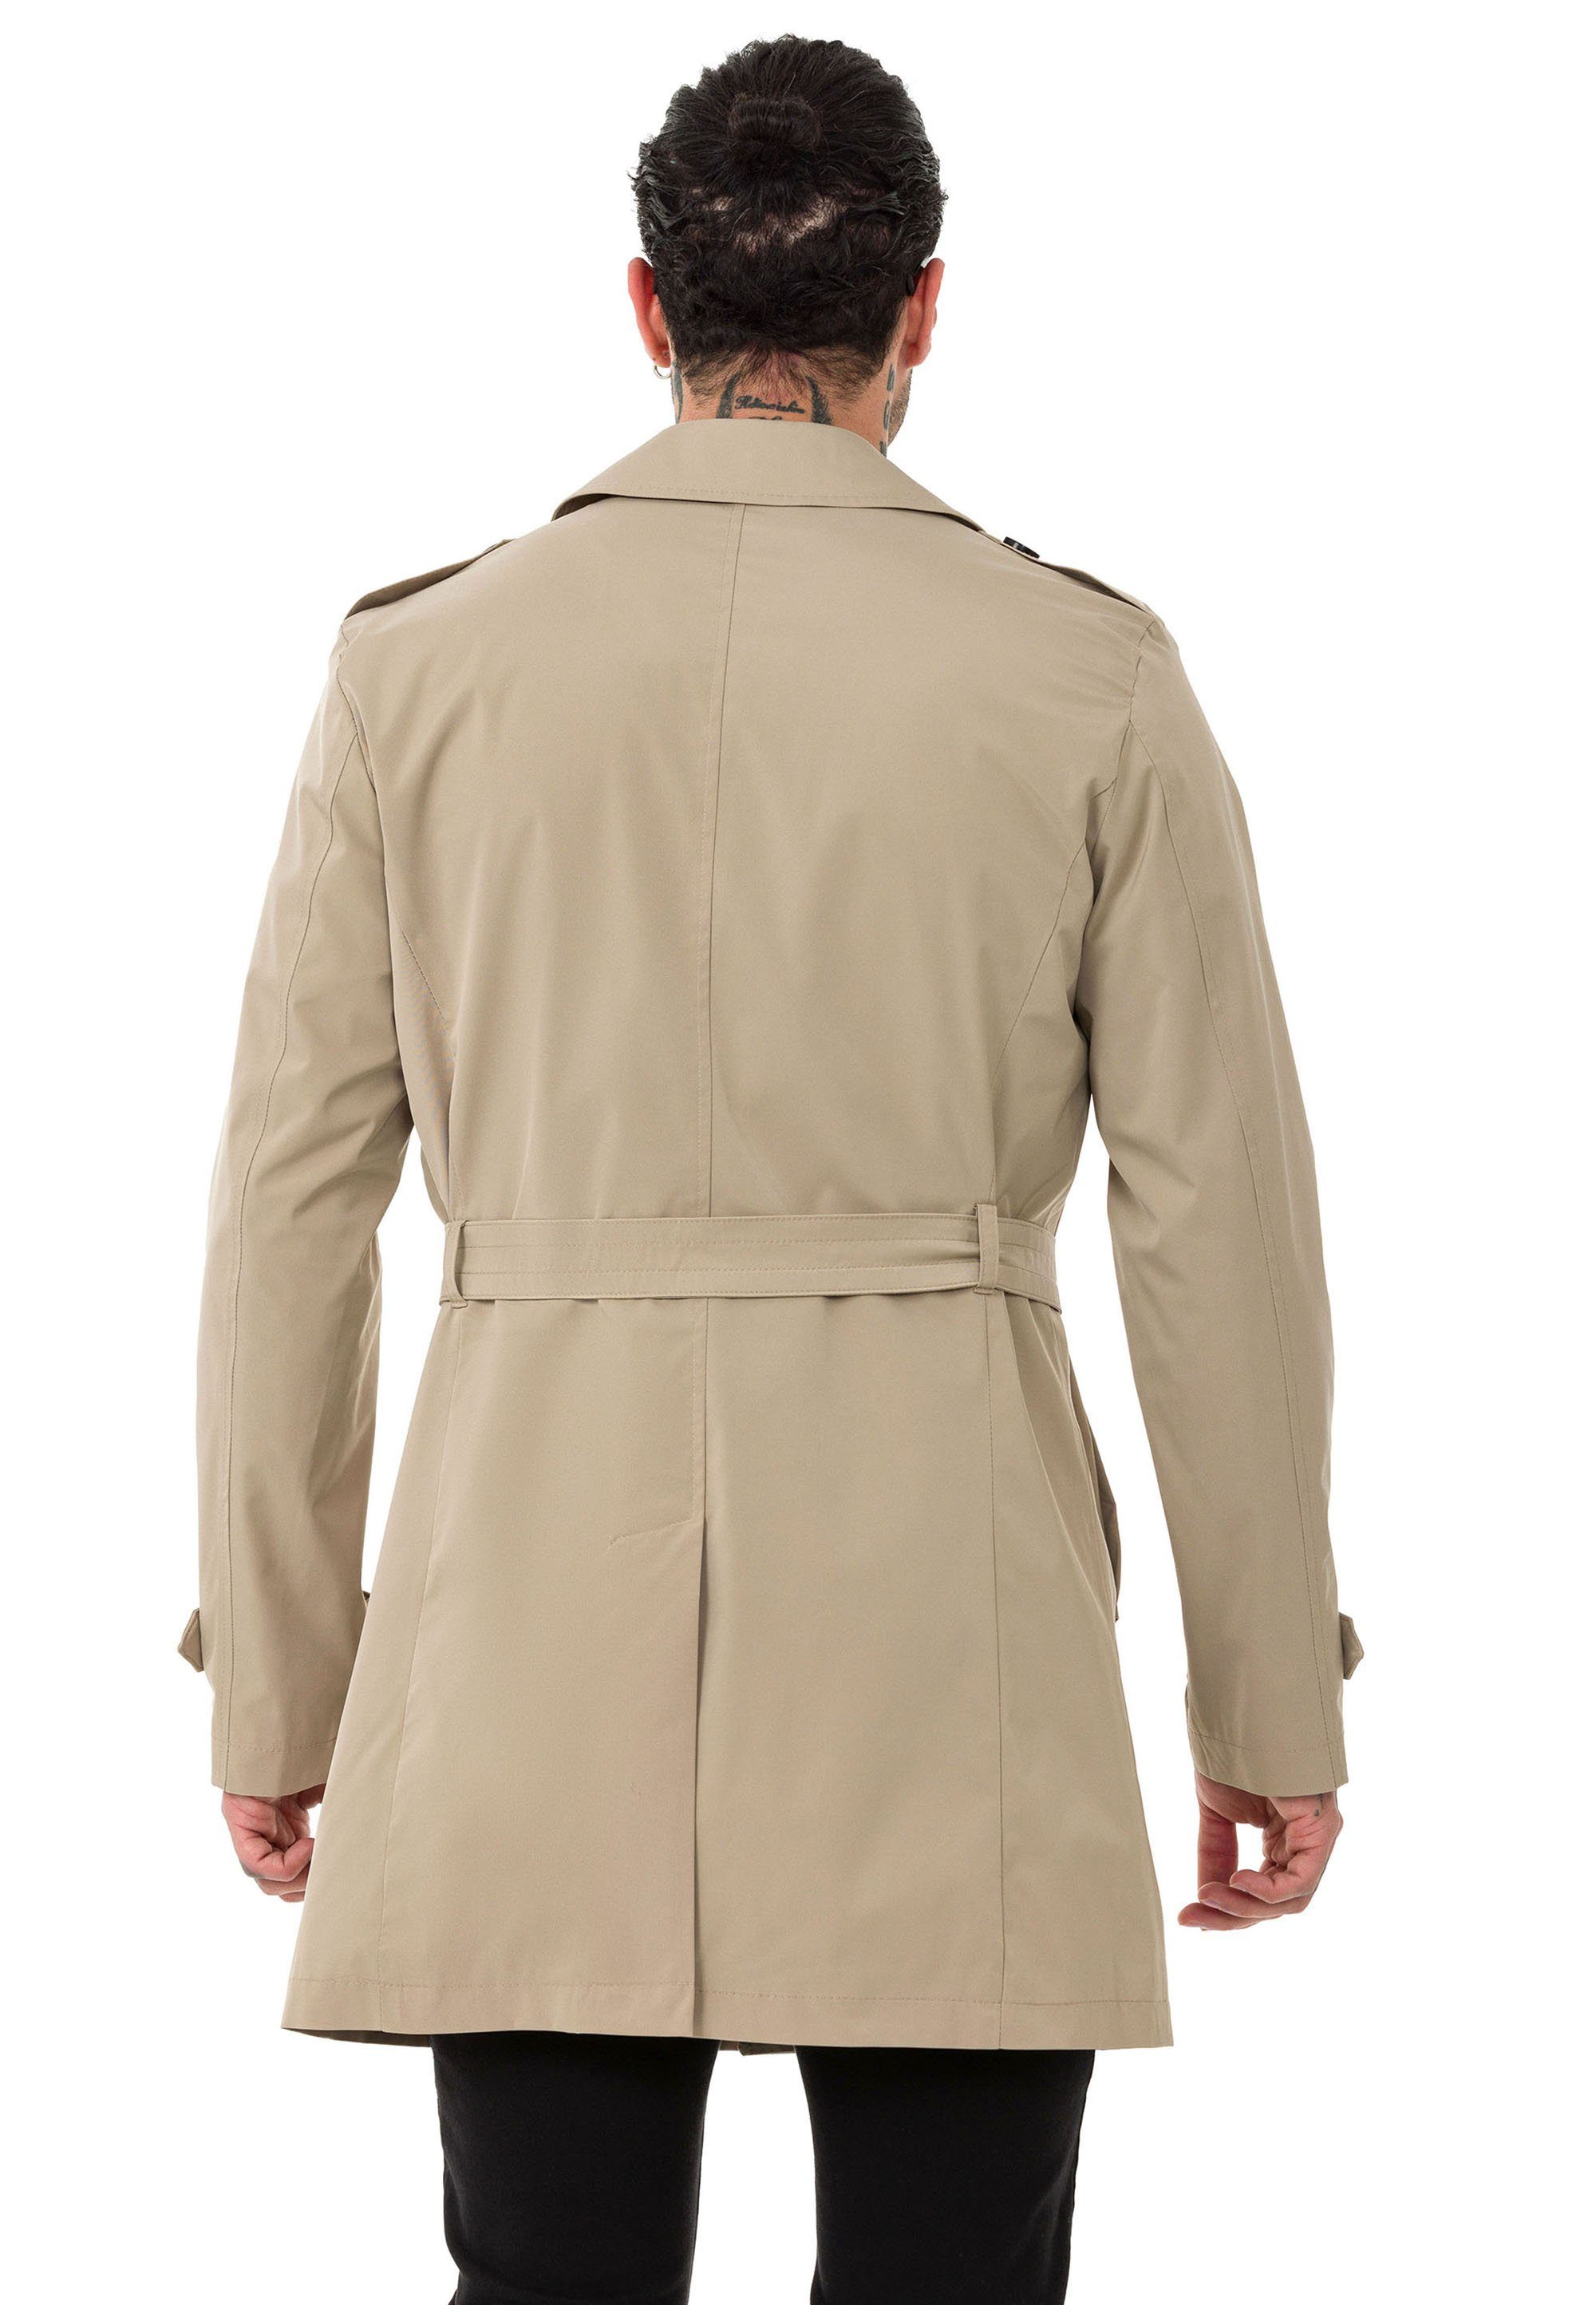 Trenchcoat Beige Premium Mantel Herren Qualität Bridge Red Jacke RedBridge Trenchcoat